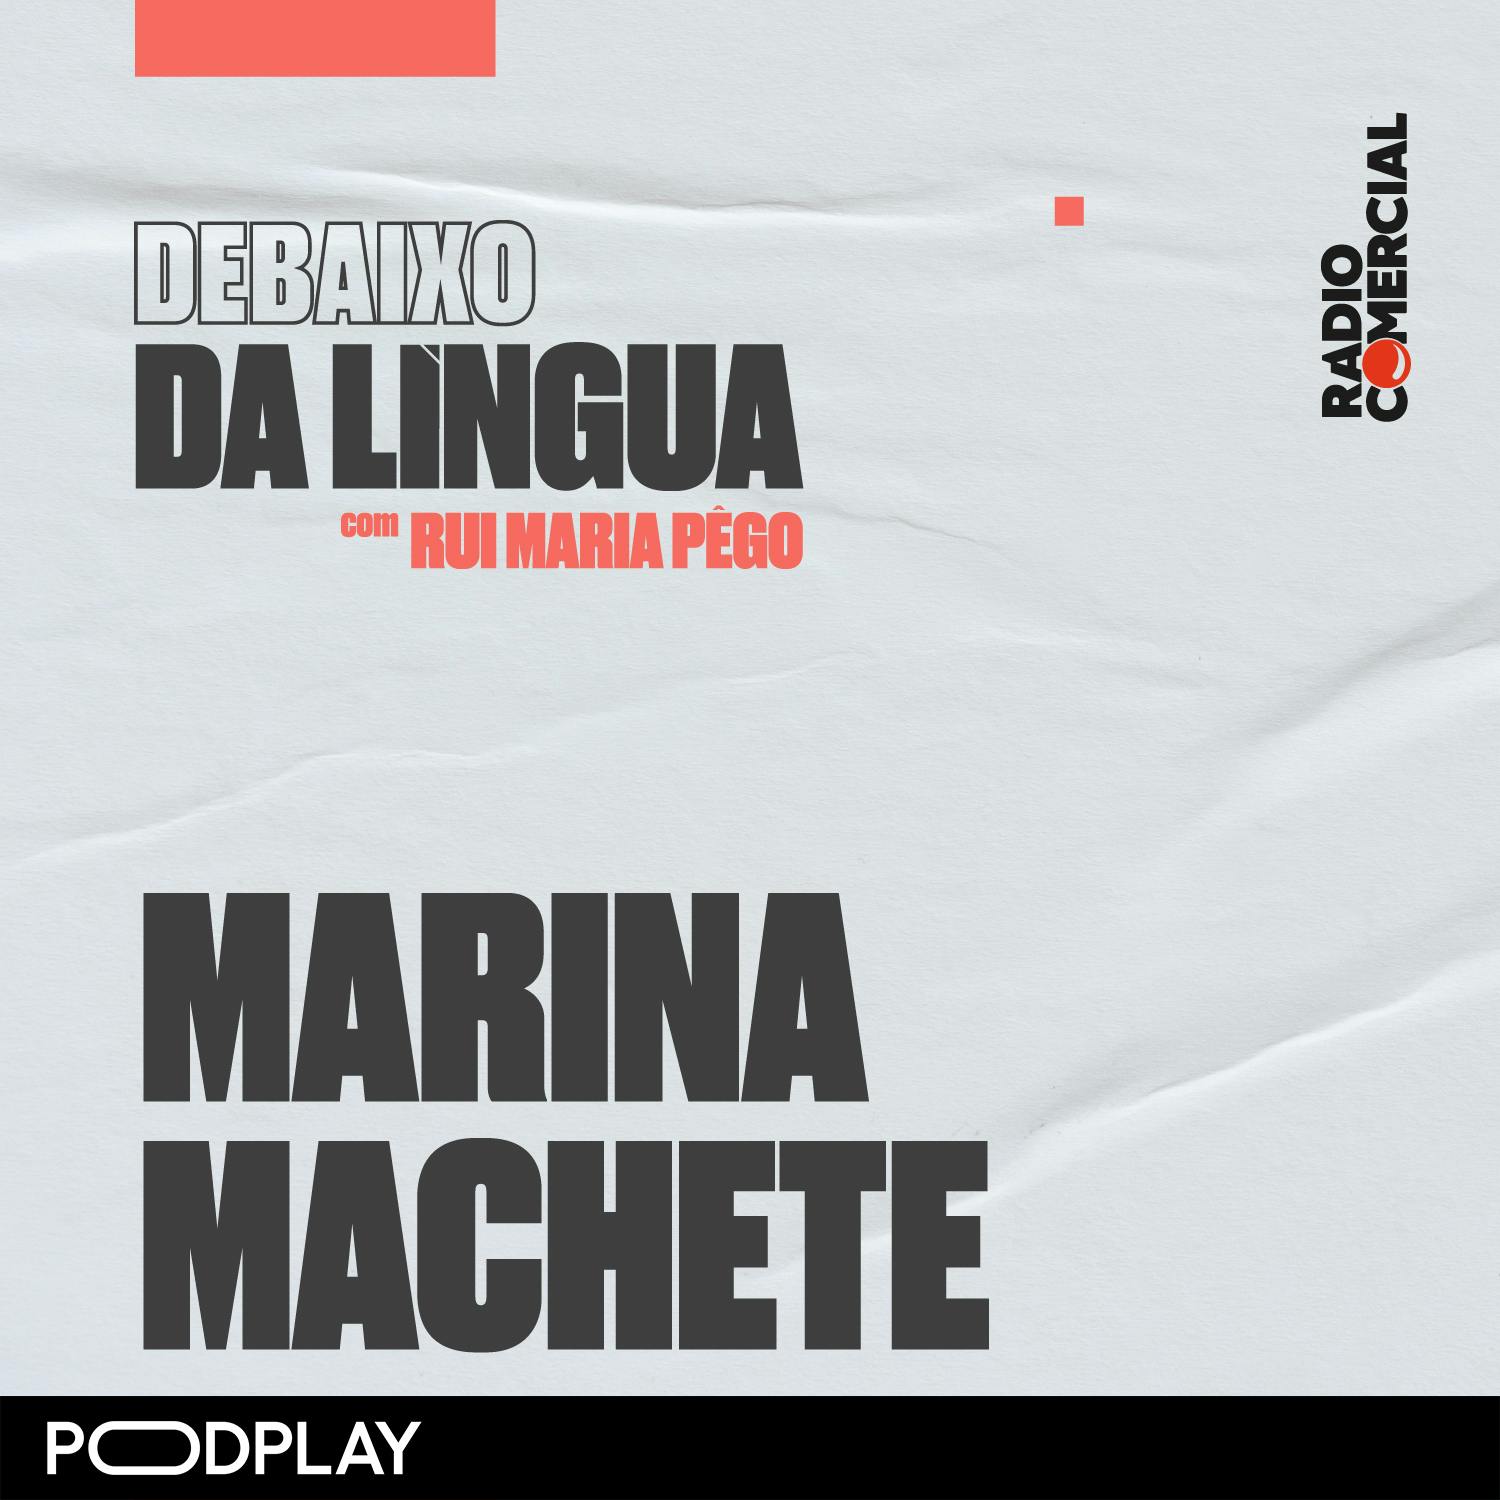 Marina Machete